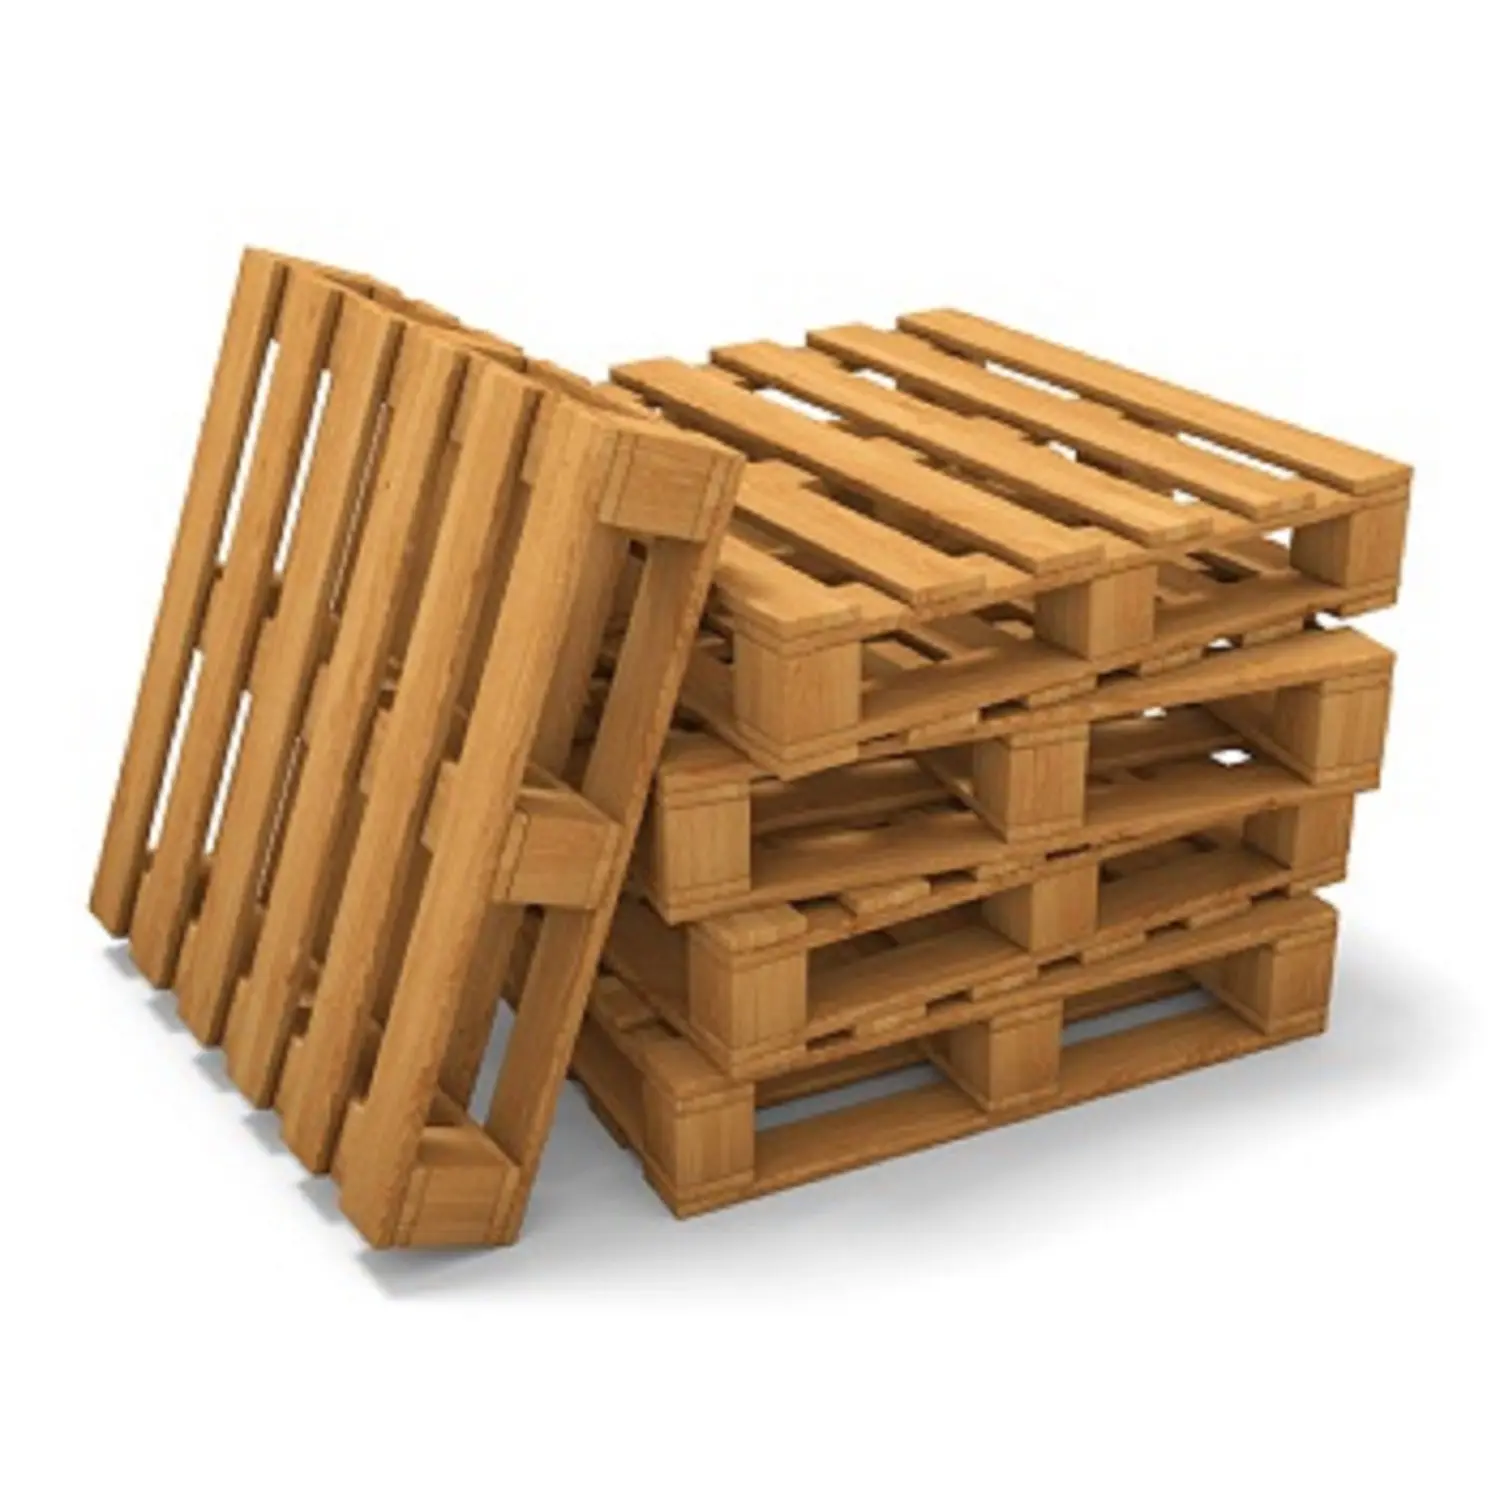 सस्ते Europallets EPAL थोक थोक लकड़ी pallets में यूरोपीय संघ के मानक 1200x800 यूरो फूस परिवहन